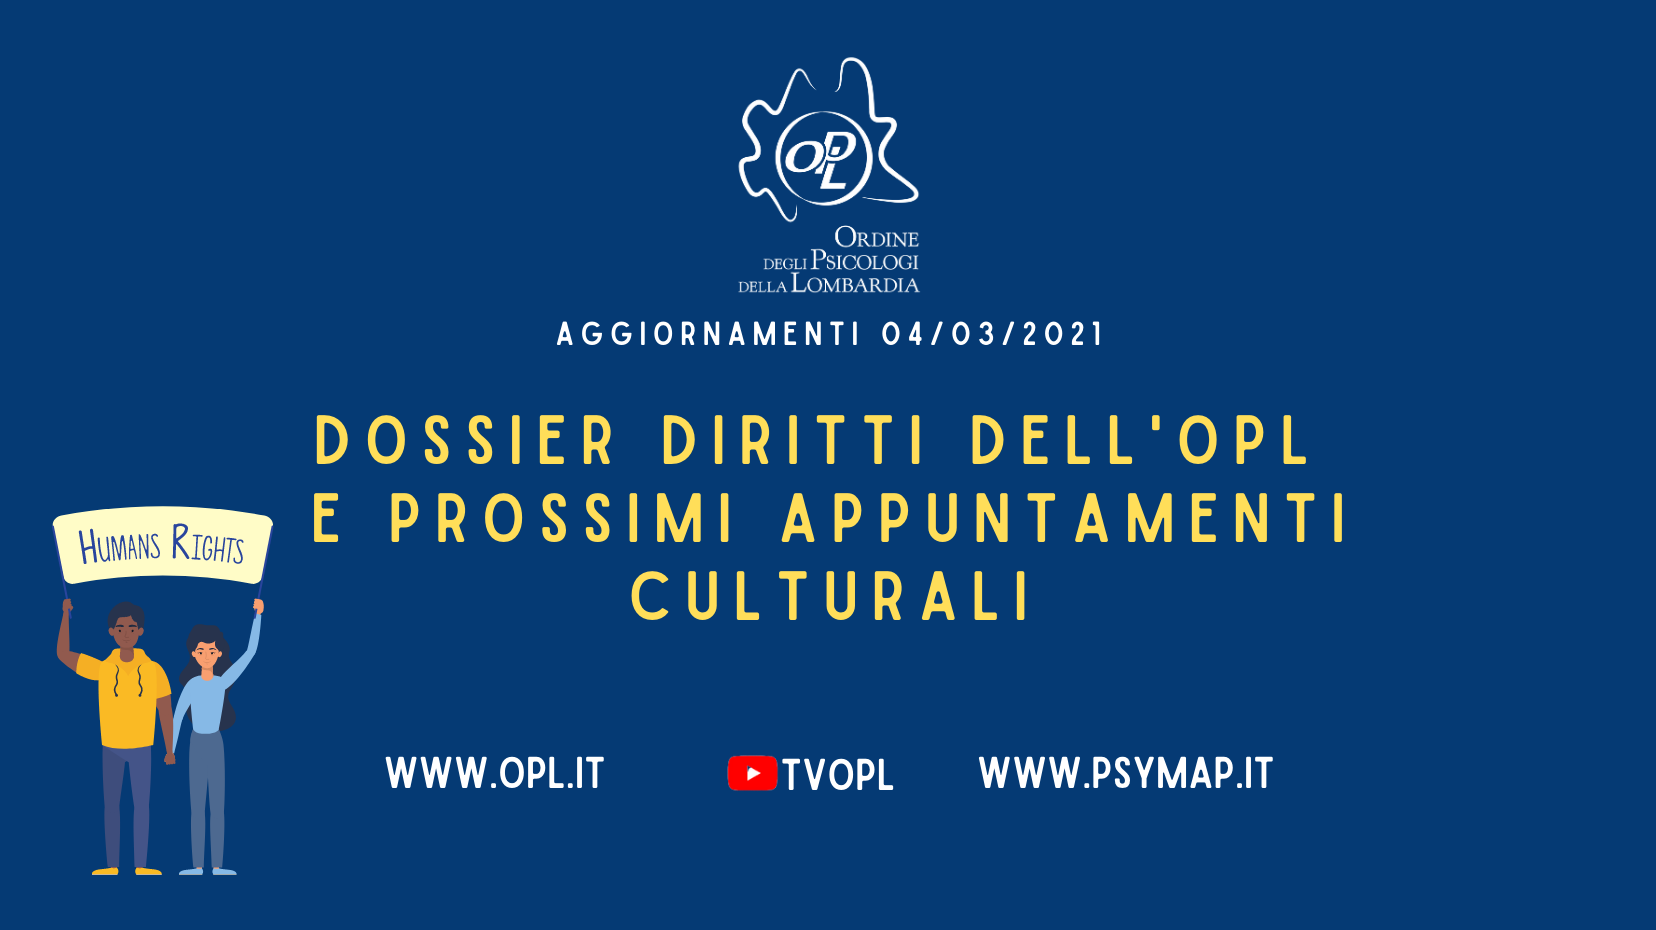 Aggiornamenti del 04/03/2021 - Dossier diritti dell'OPL e prossimi appuntamenti culturali